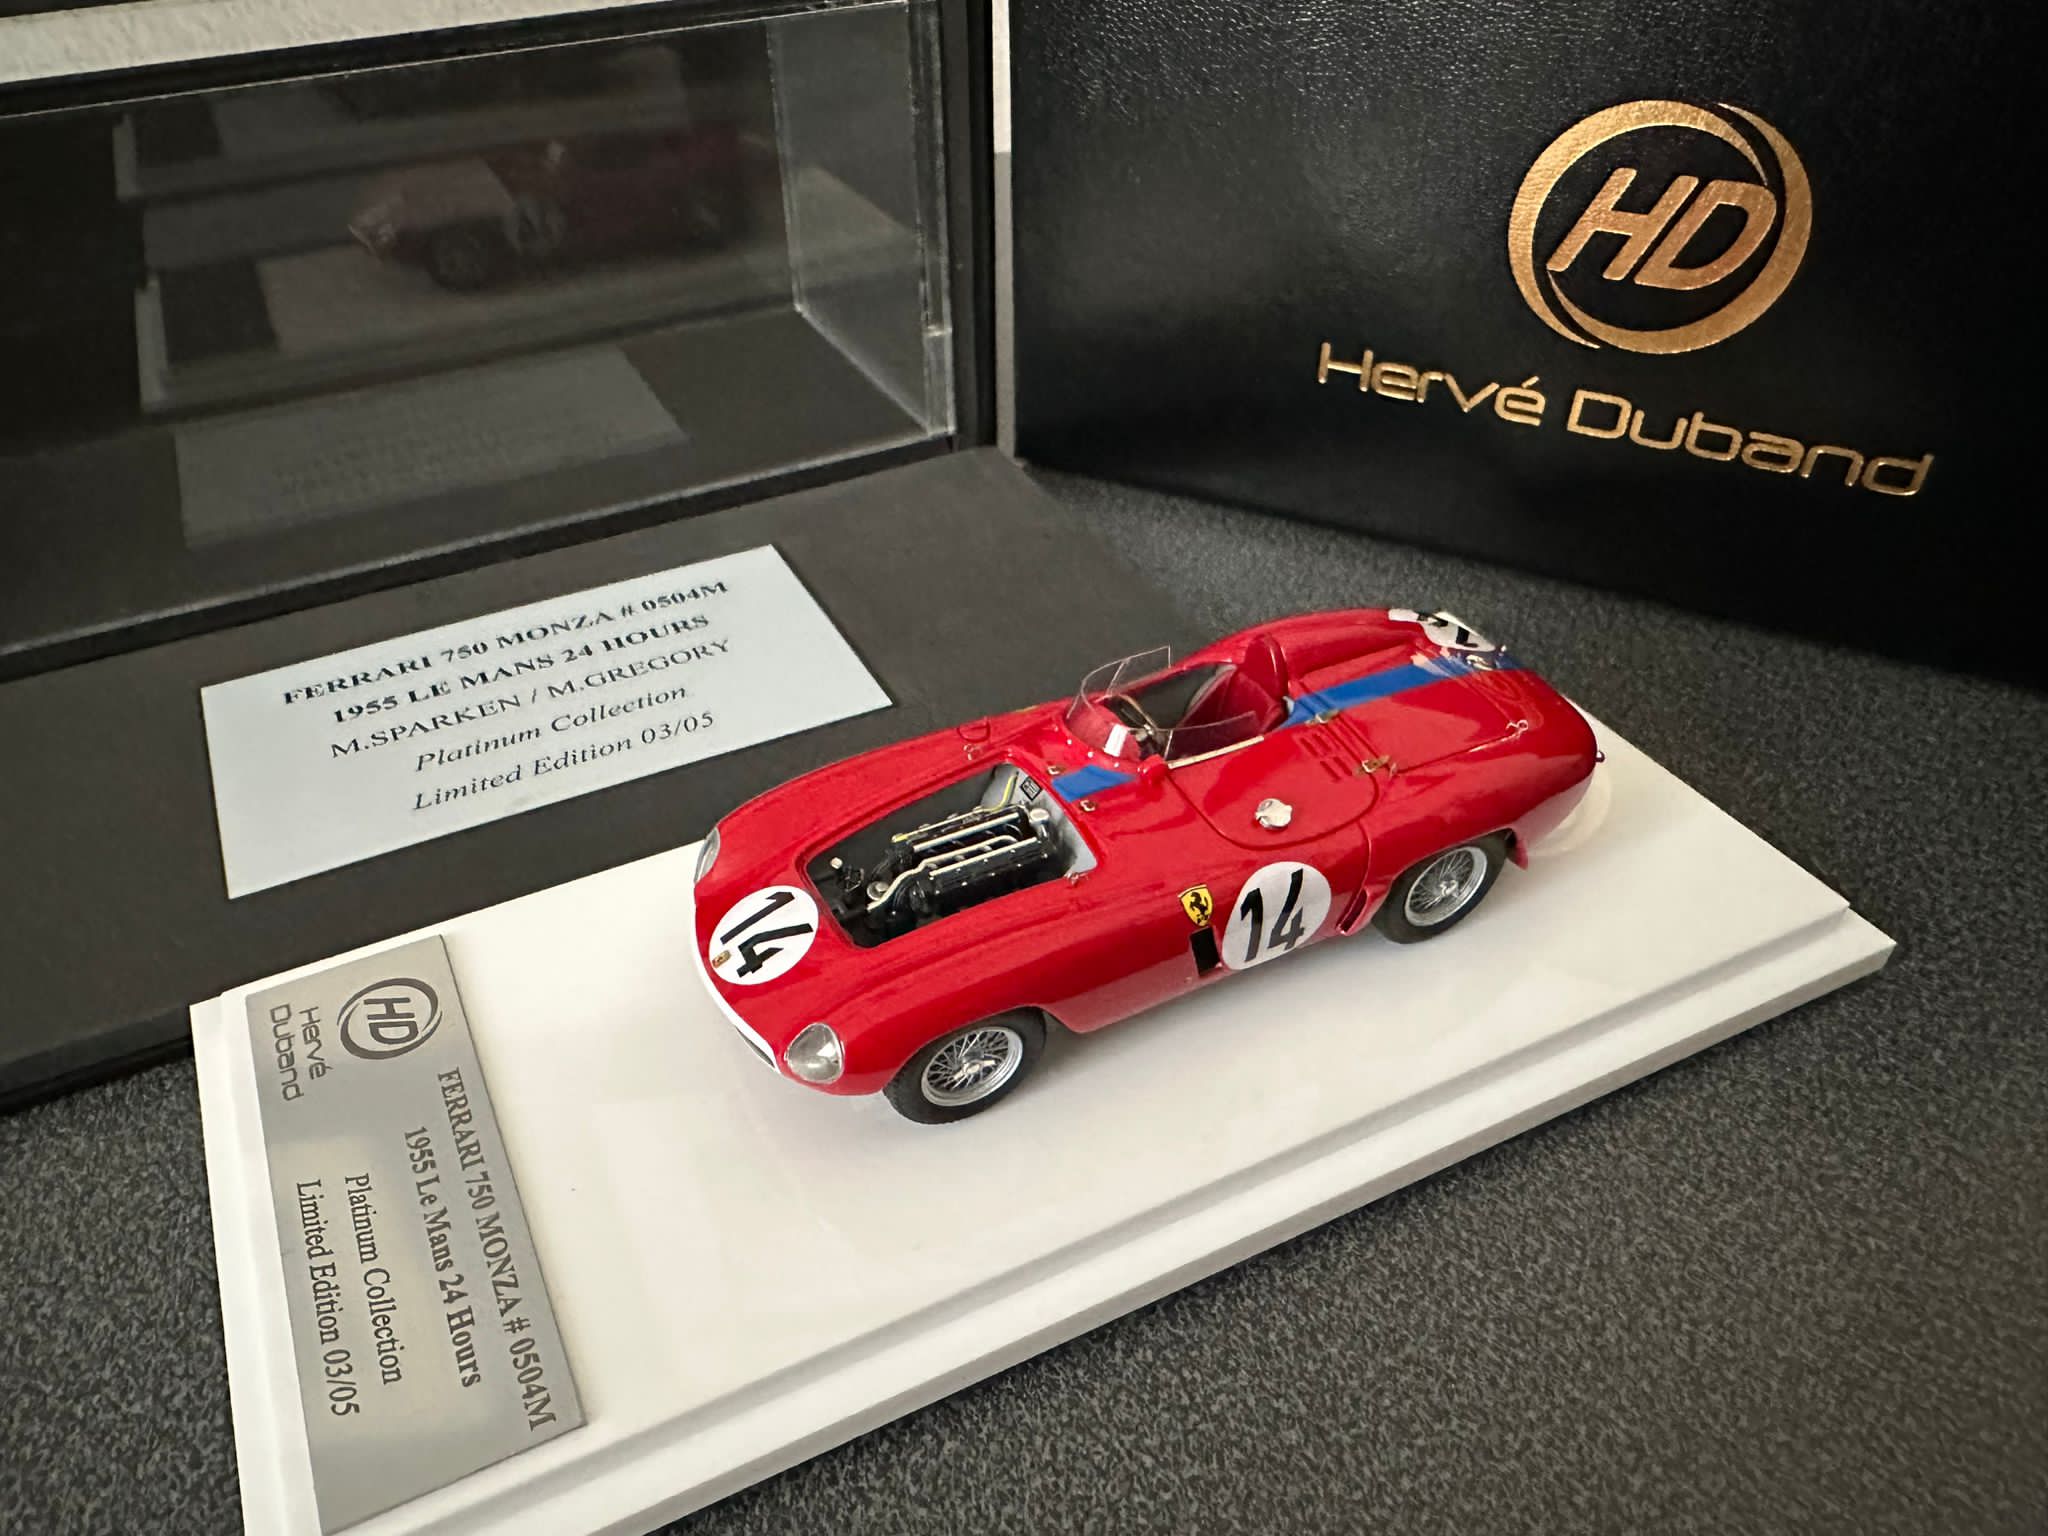 H. Duband : Ferrari 750 Monza Le Mans 1955